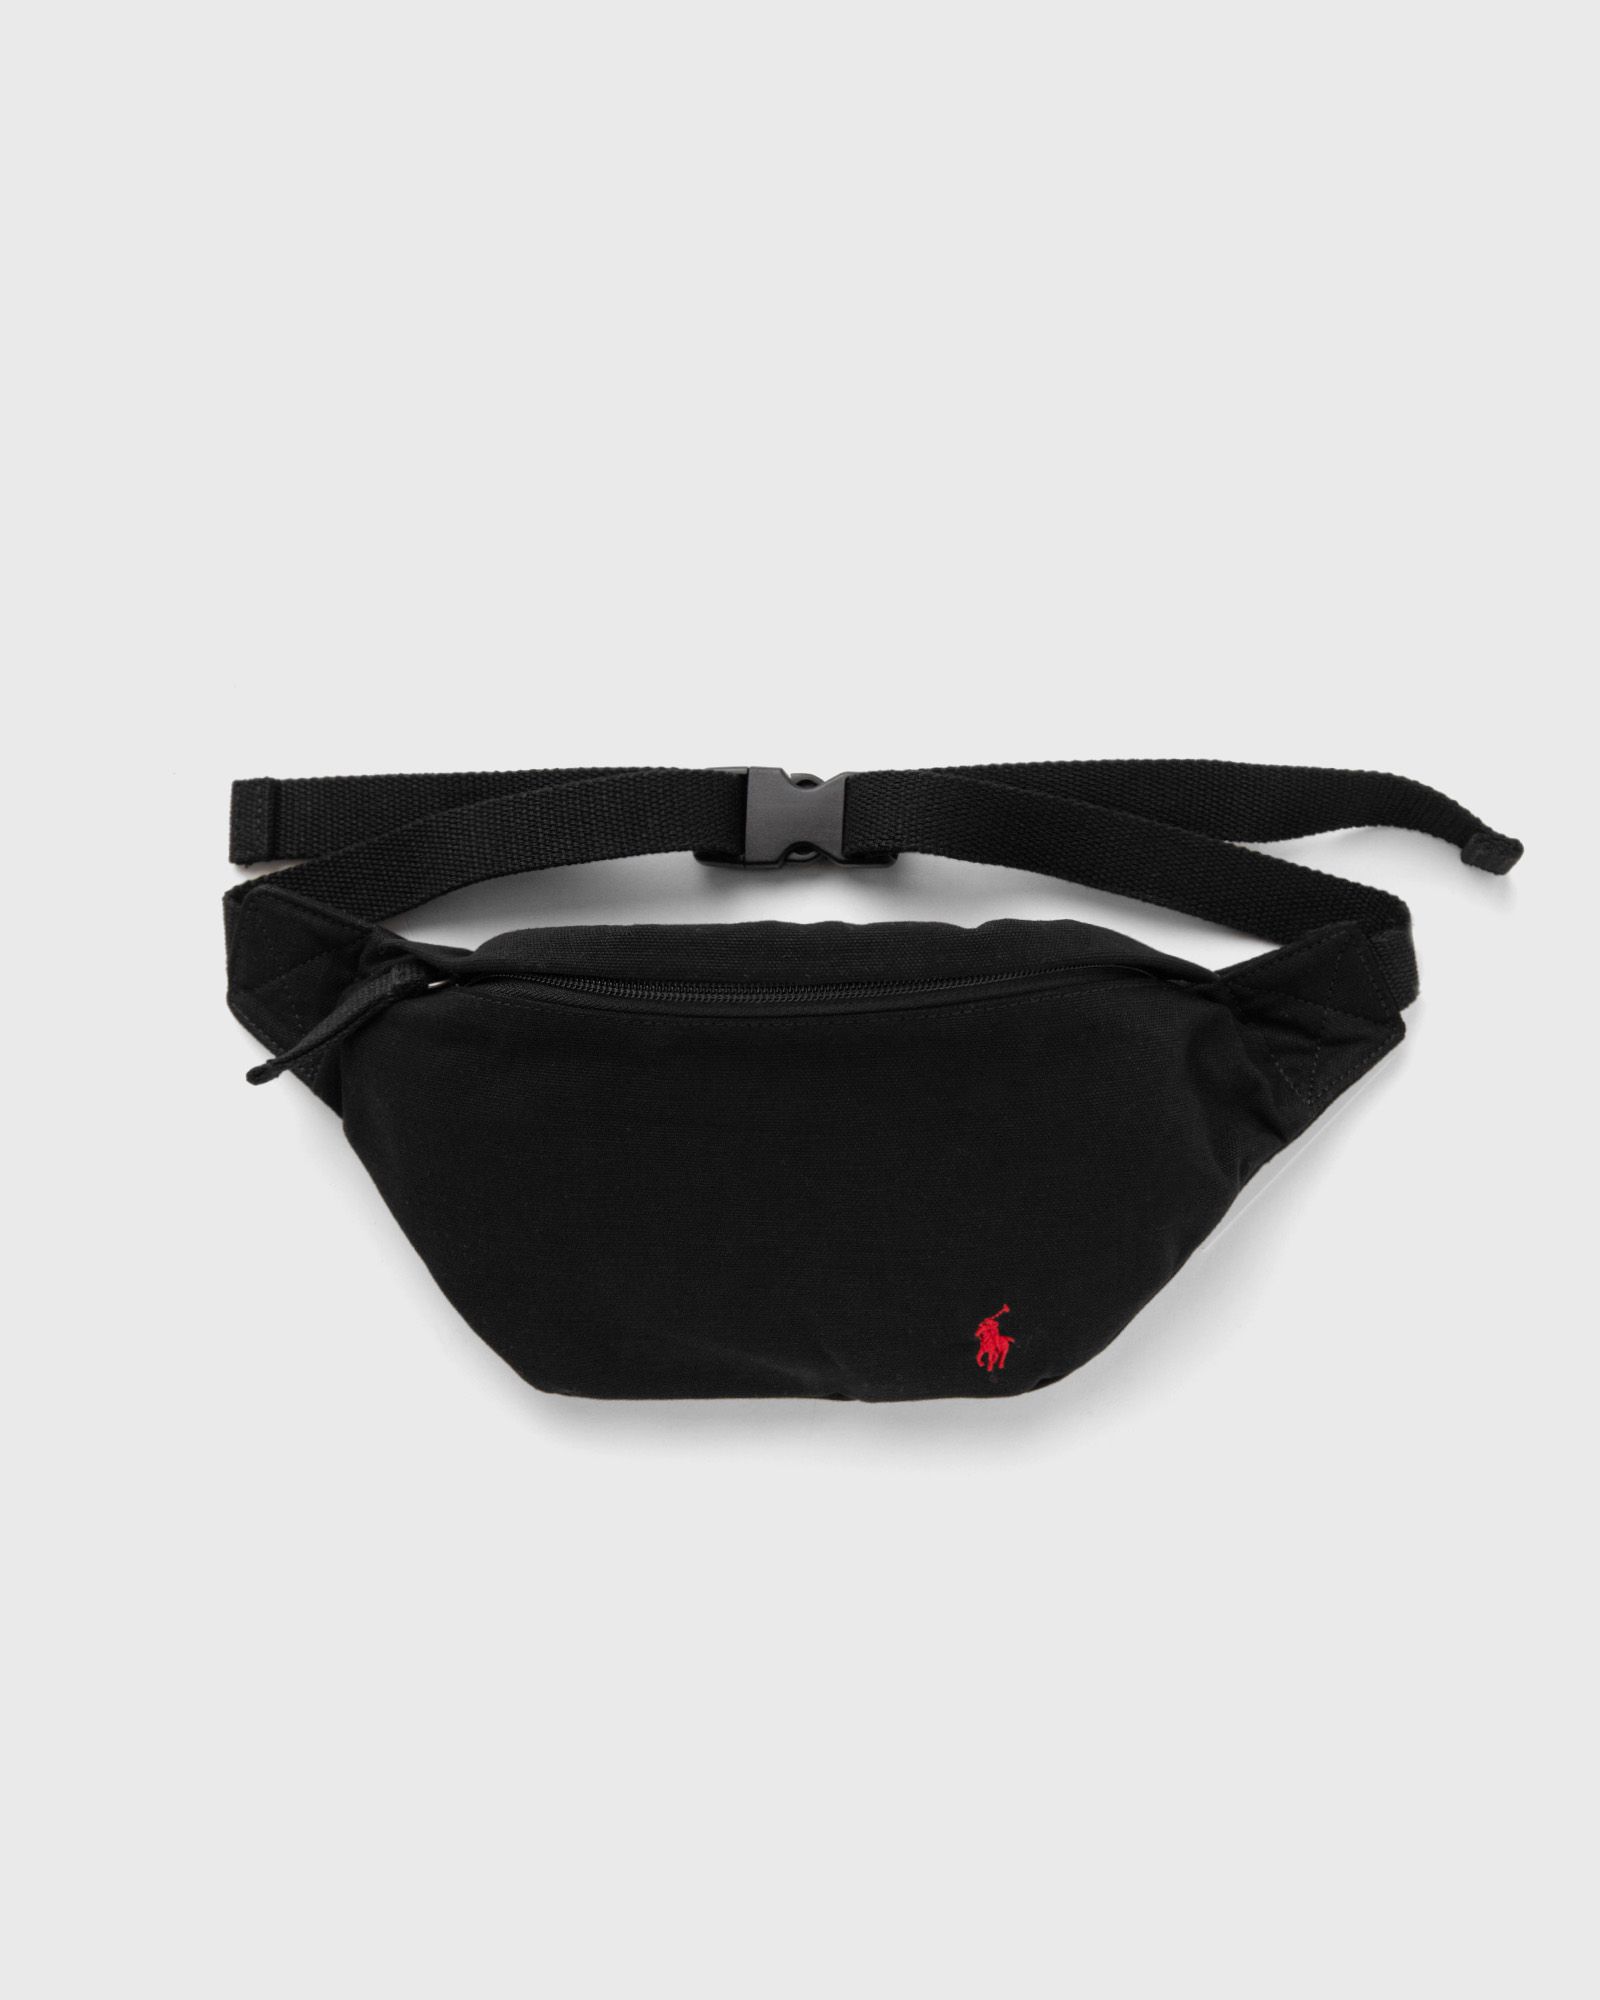 Polo Ralph Lauren - waistpack-waist bag-medium men messenger & crossbody bags black in größe:one size